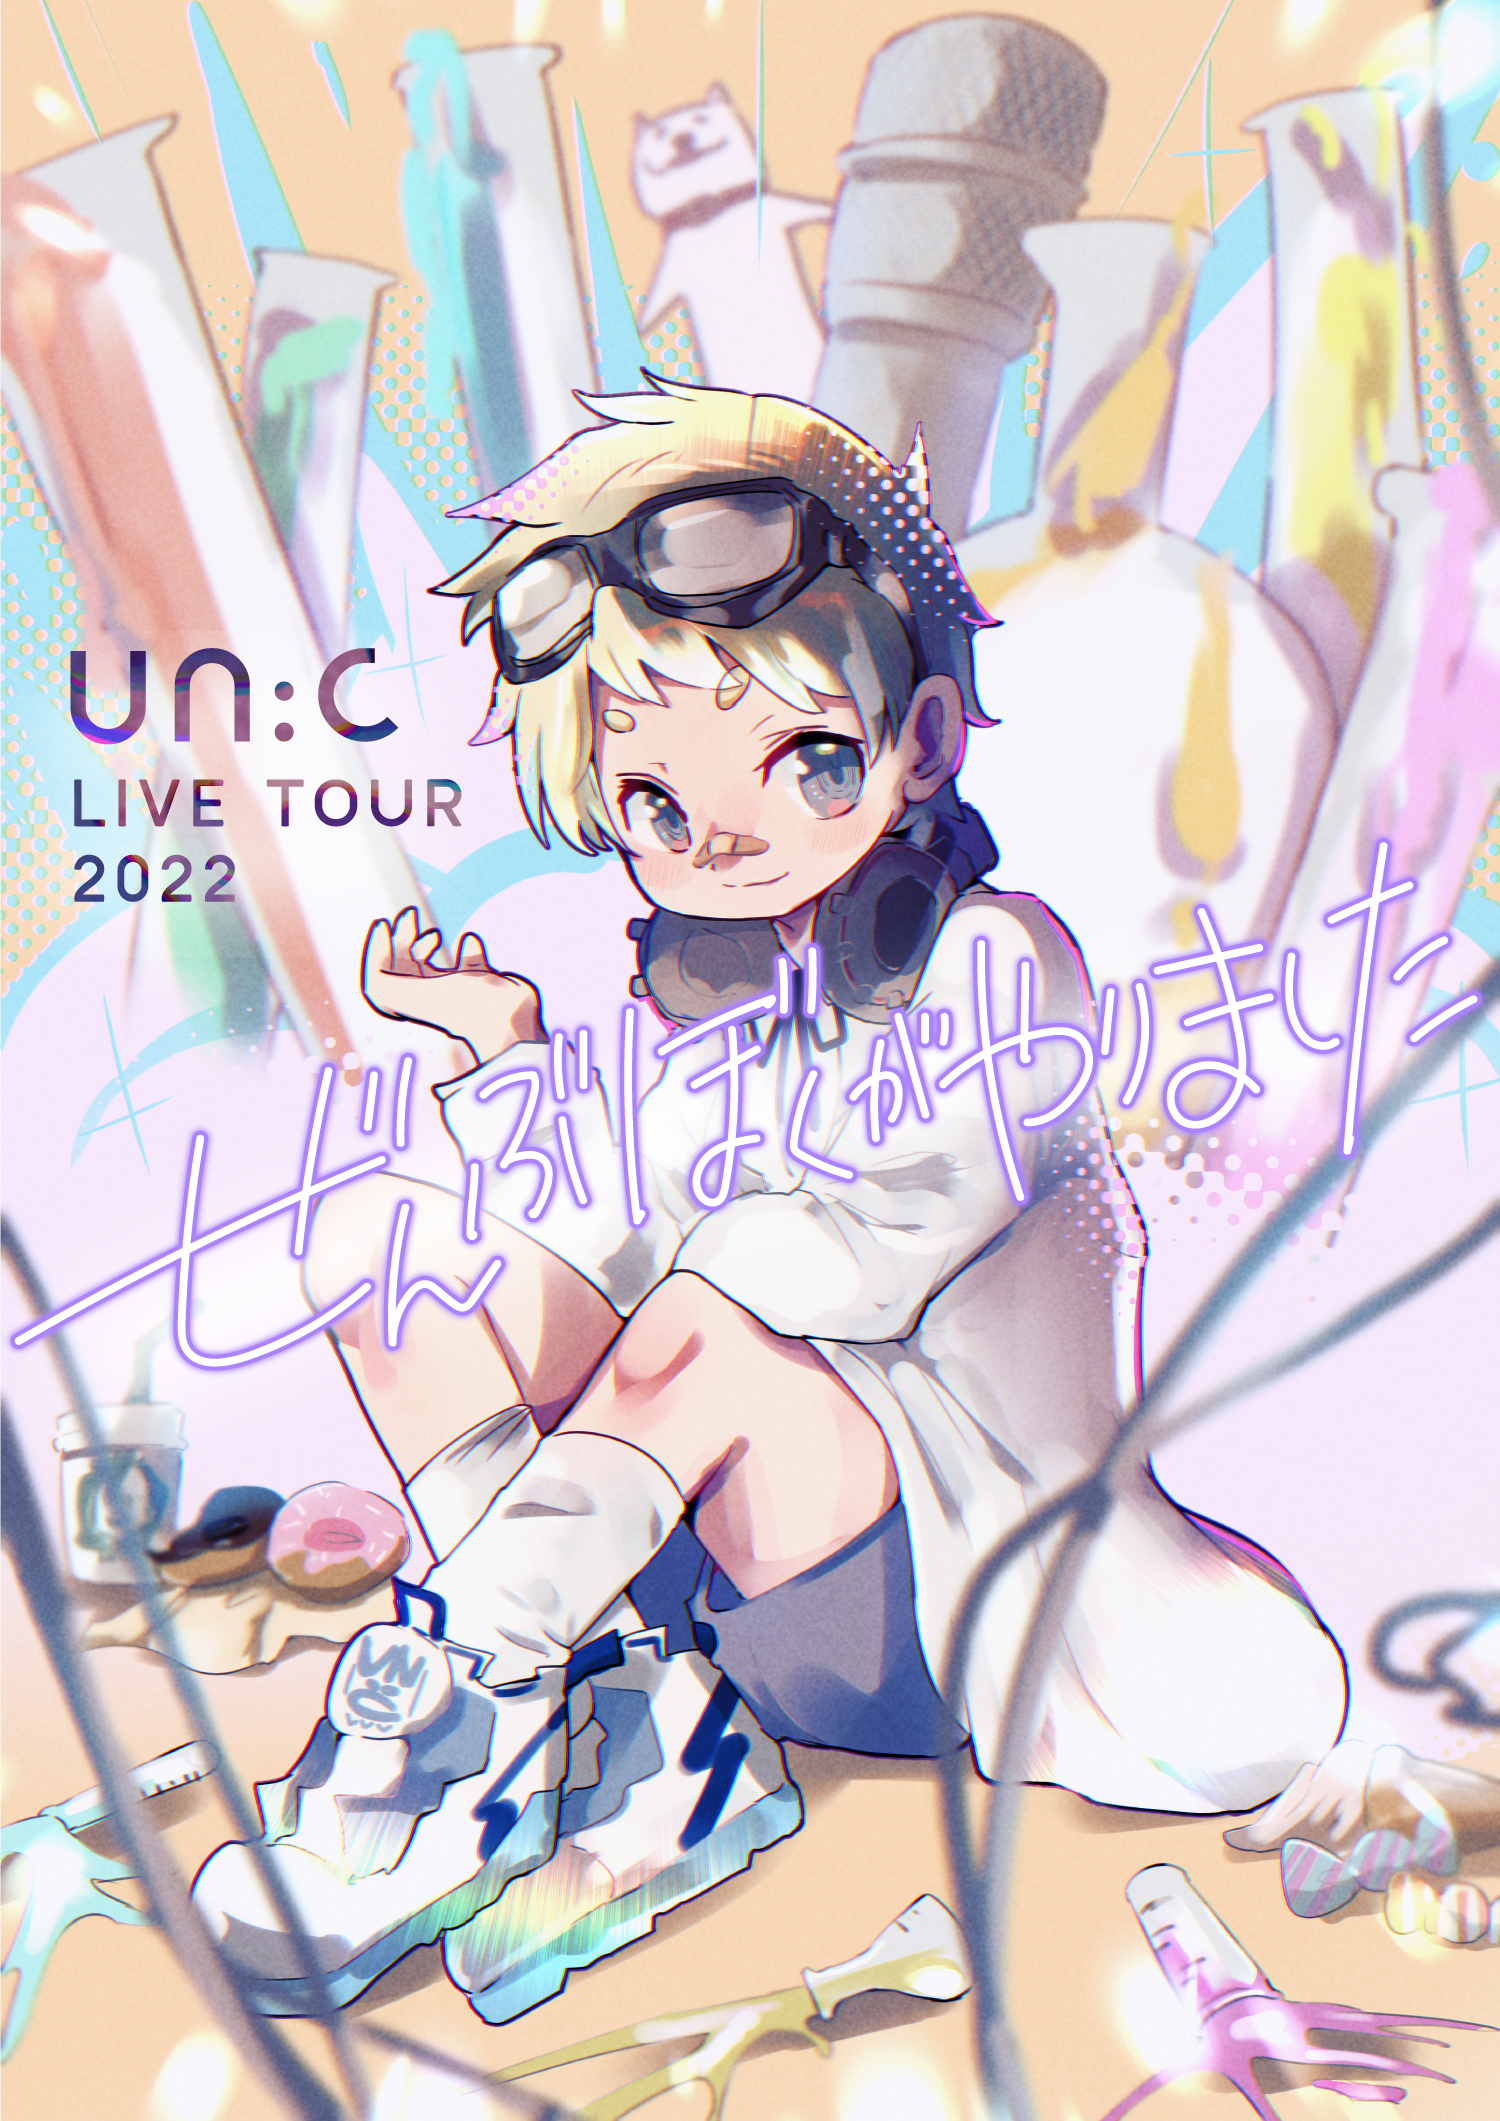 「un:c LIVE TOUR 2022 -ぜんぶぼくがやりました-」フライヤー